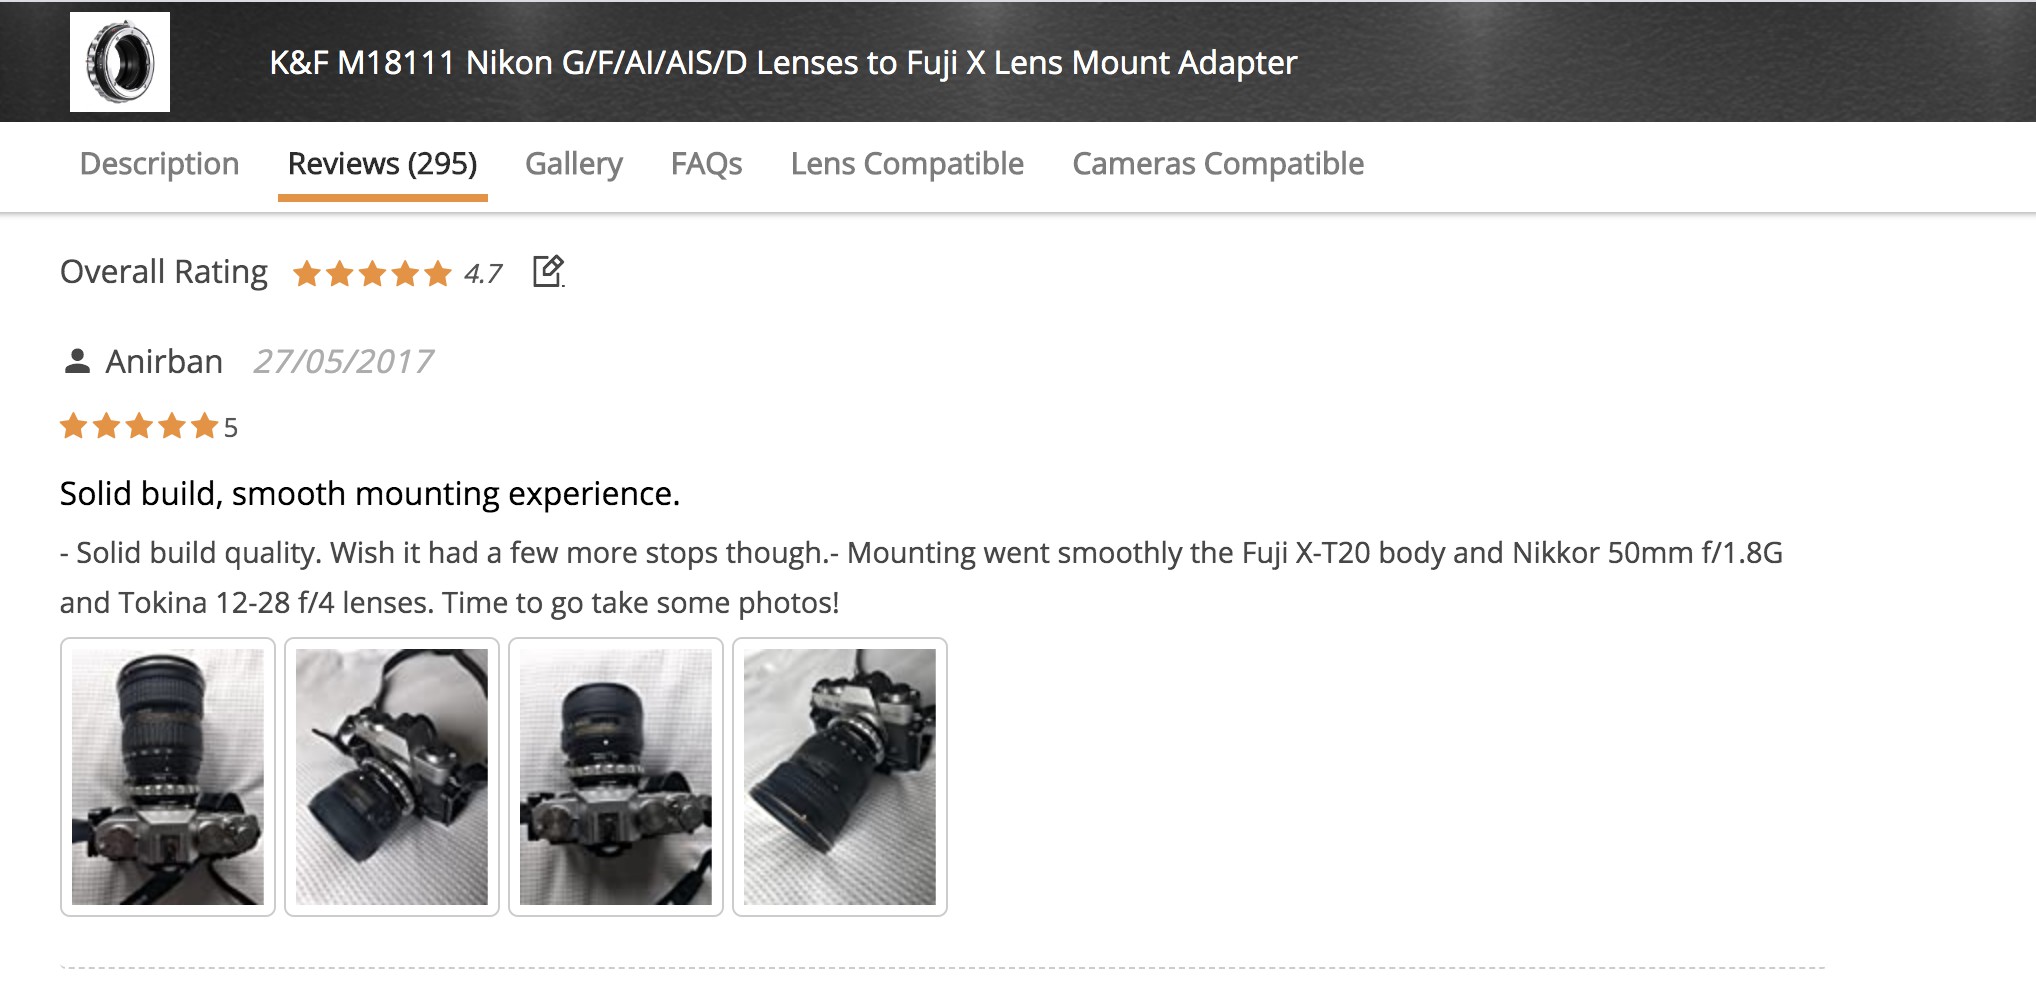 Best Lens Adapter Nikon To Fuji In 2020